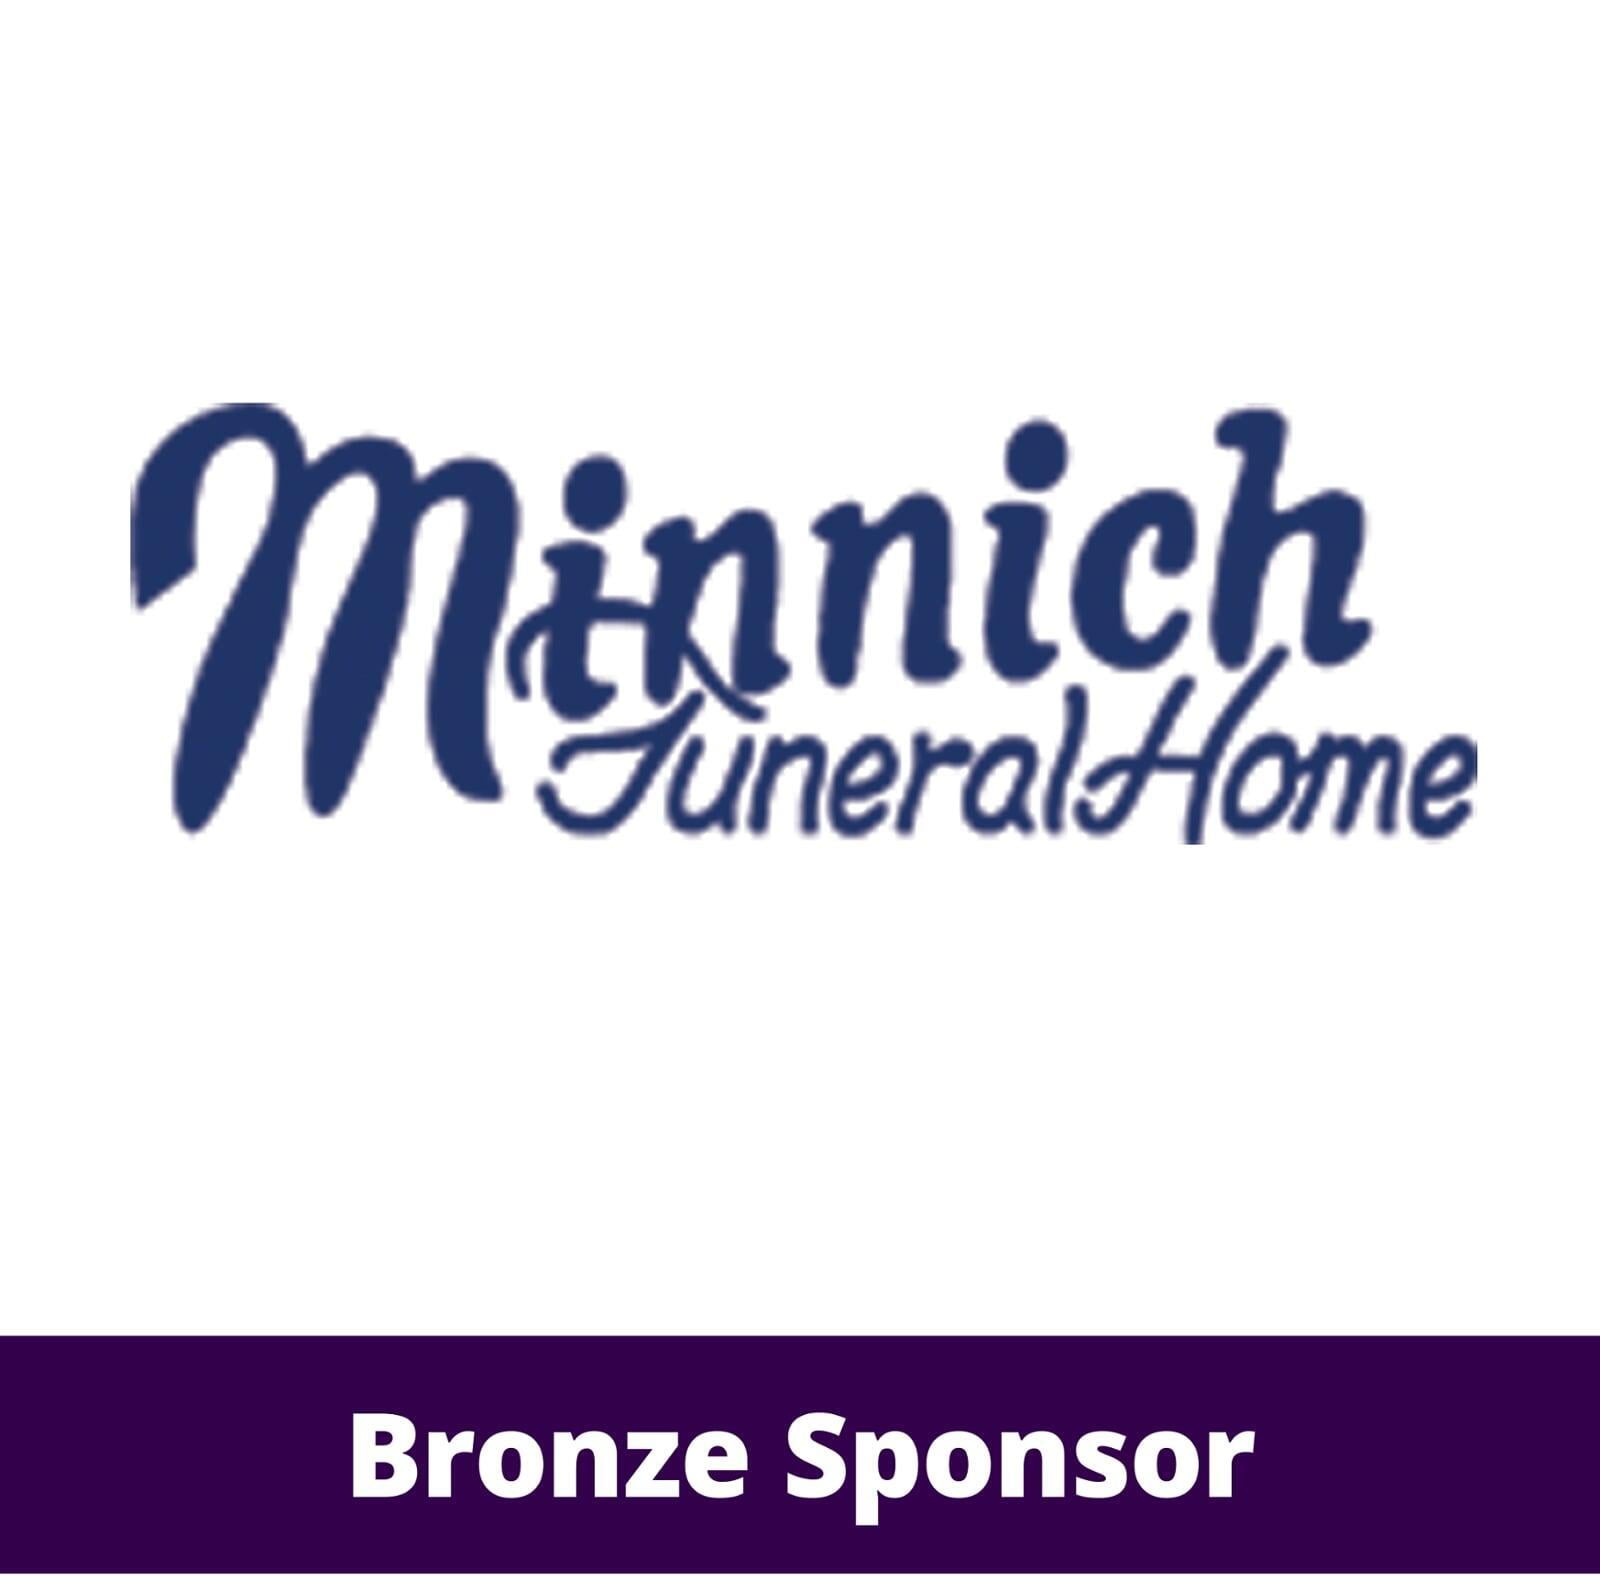 Minnich Funeral Home logo